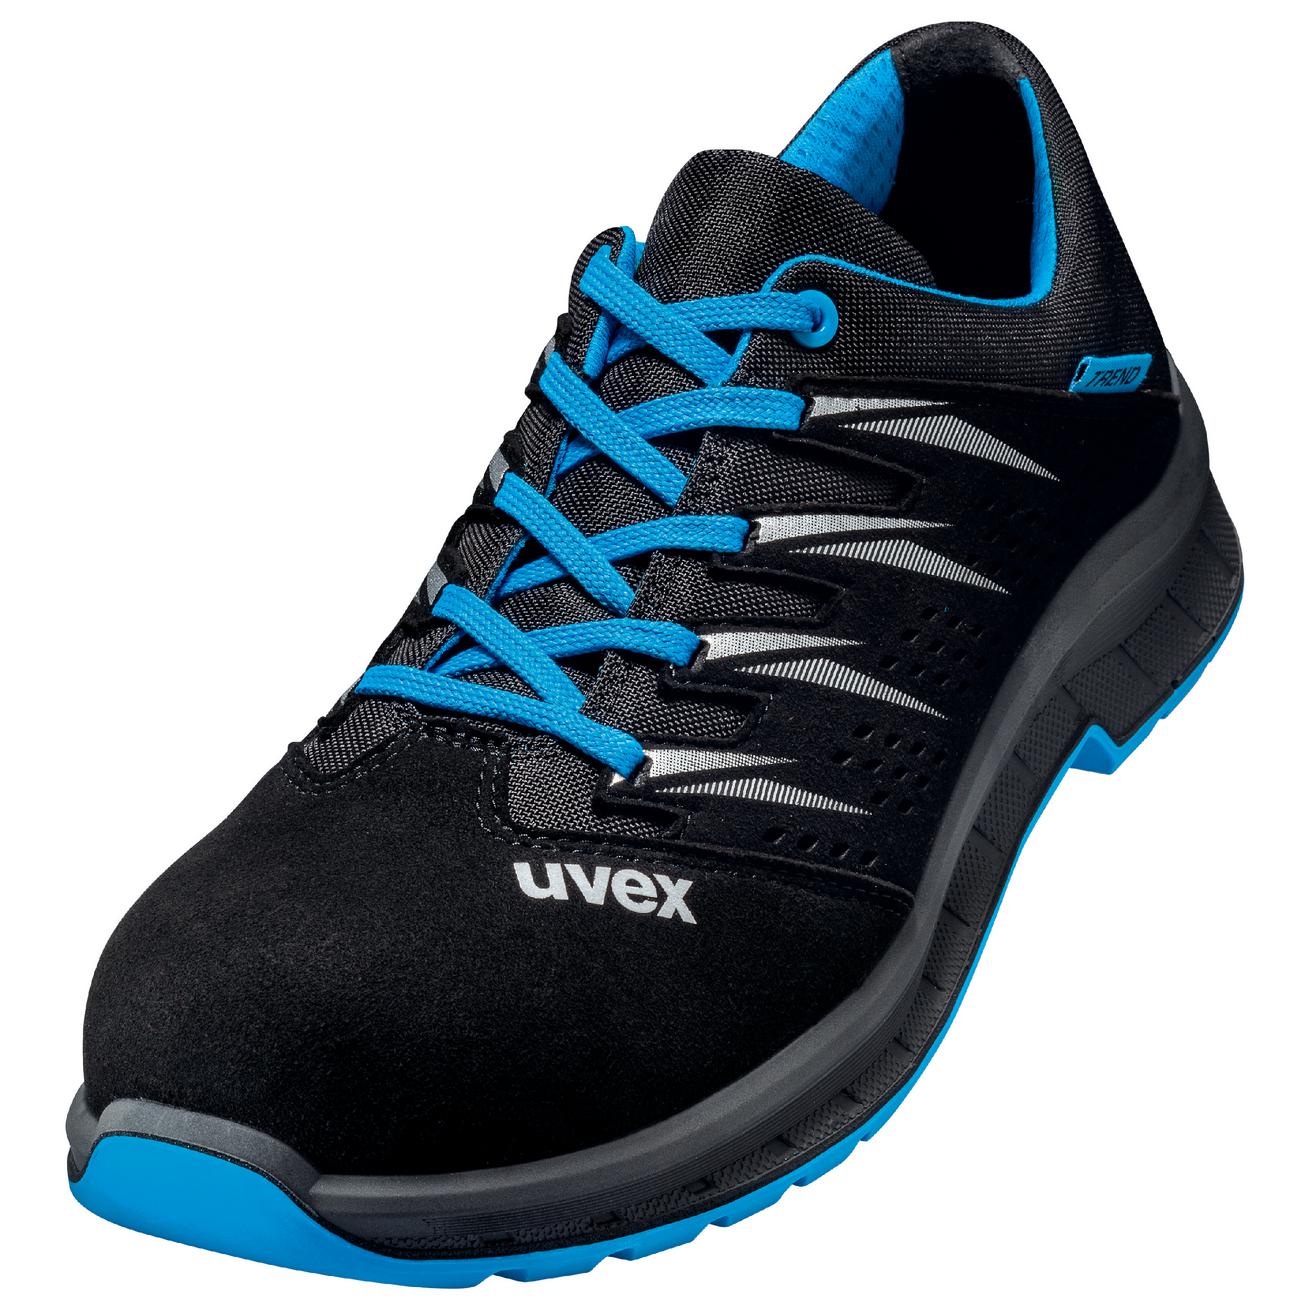 Perf. polobotka obuv uvex 2 trend, šíře 11, S1 SRC, černá/modrá 6937 Velikost: 39, Kód produktu: 6937839